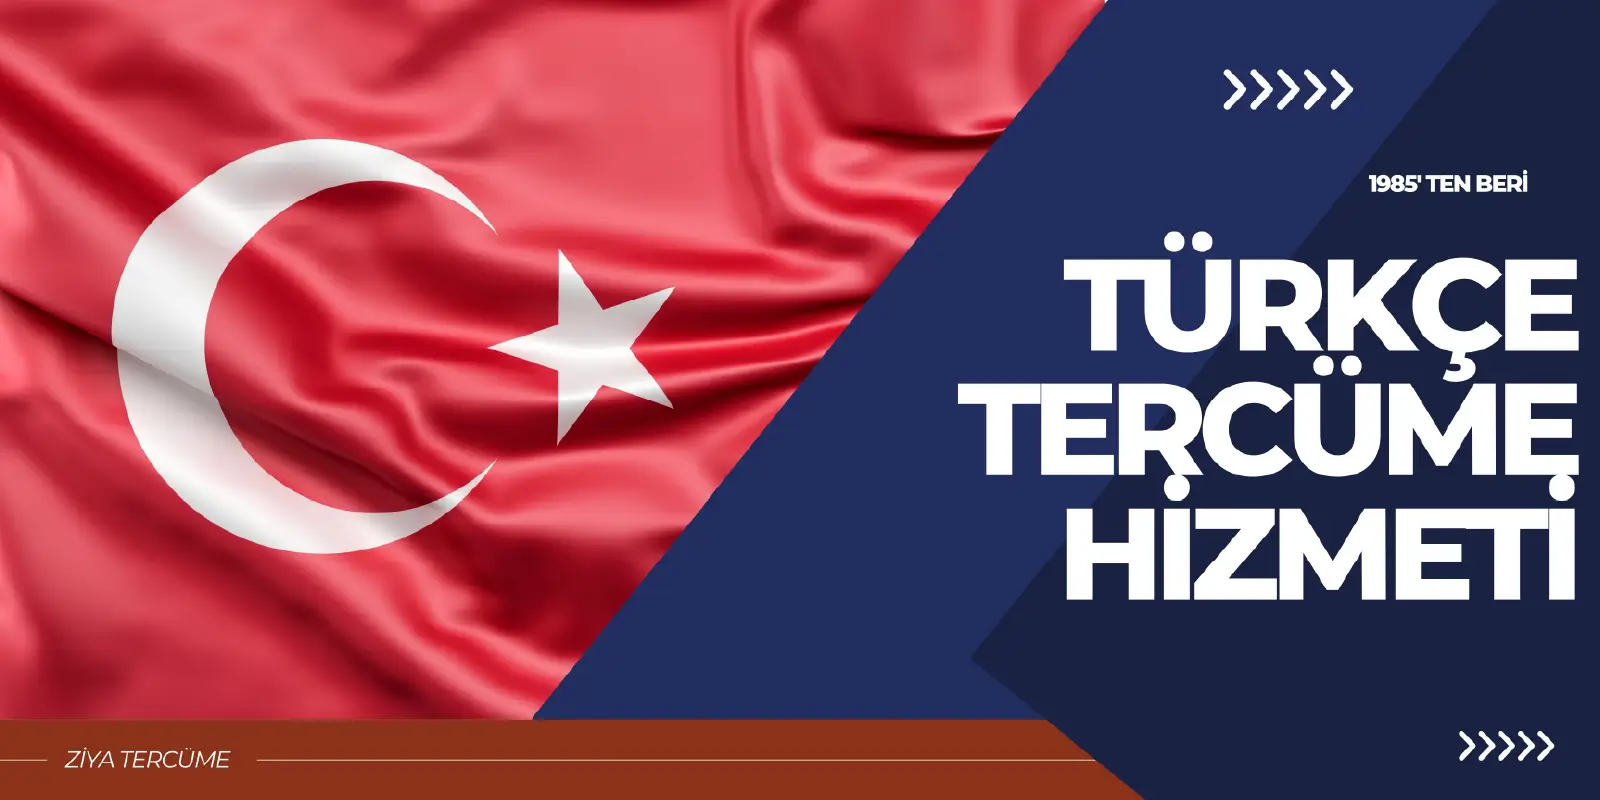 turkce-tercume